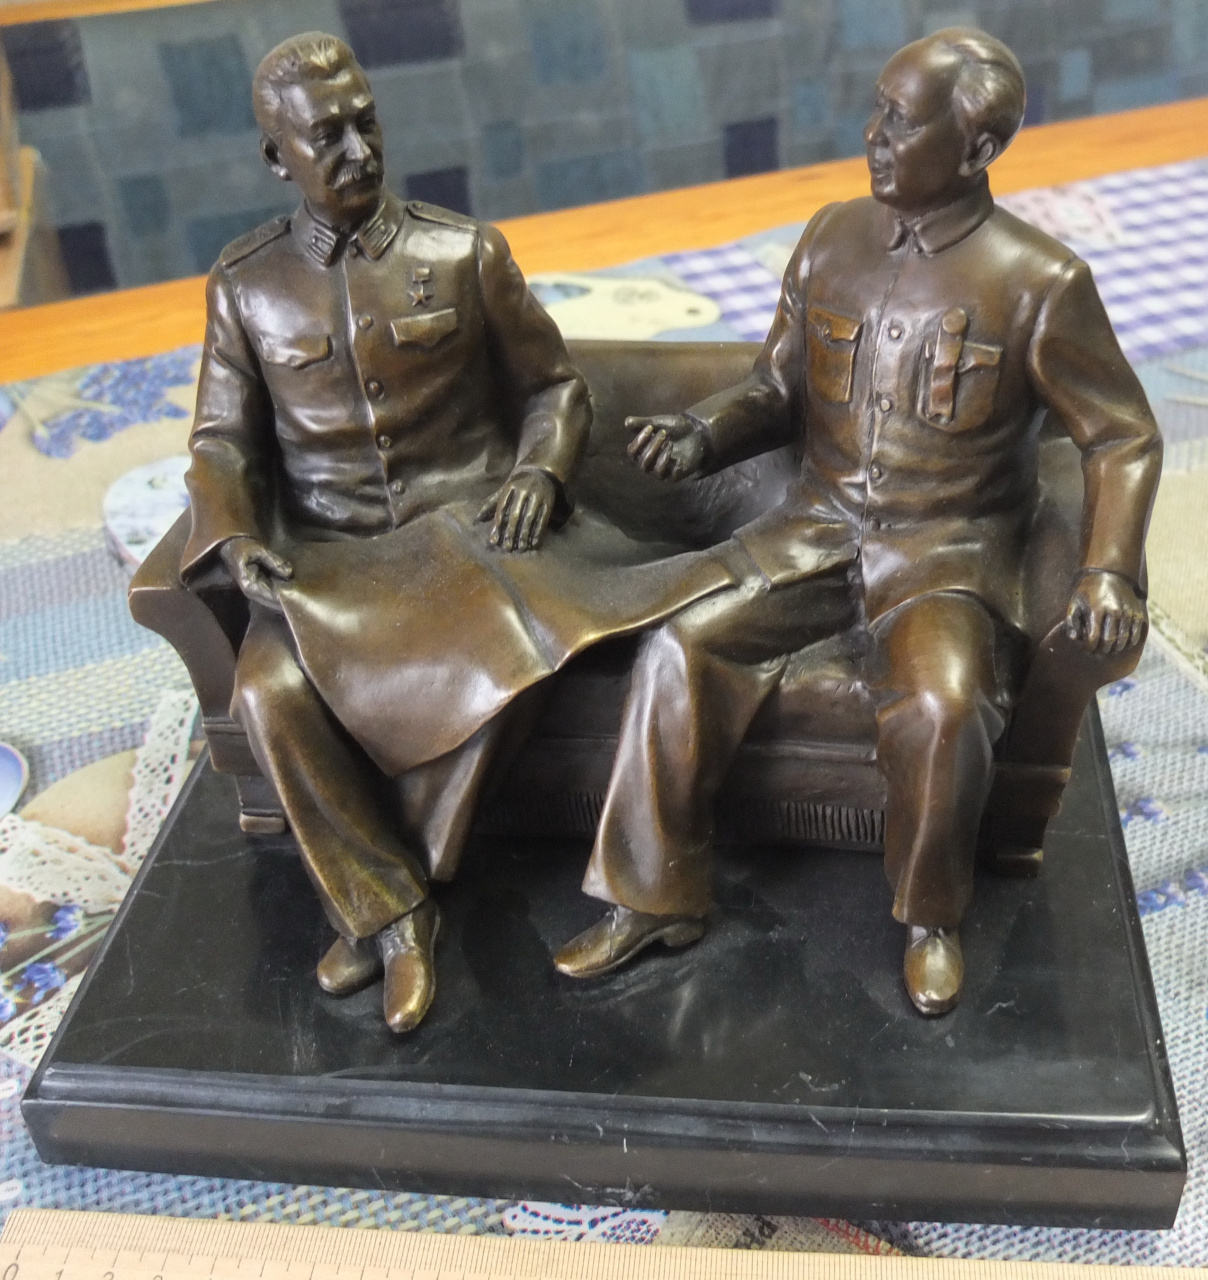 бронзовая скульптура Сталин и Мао Цзэдун на диванчике, современная бронза